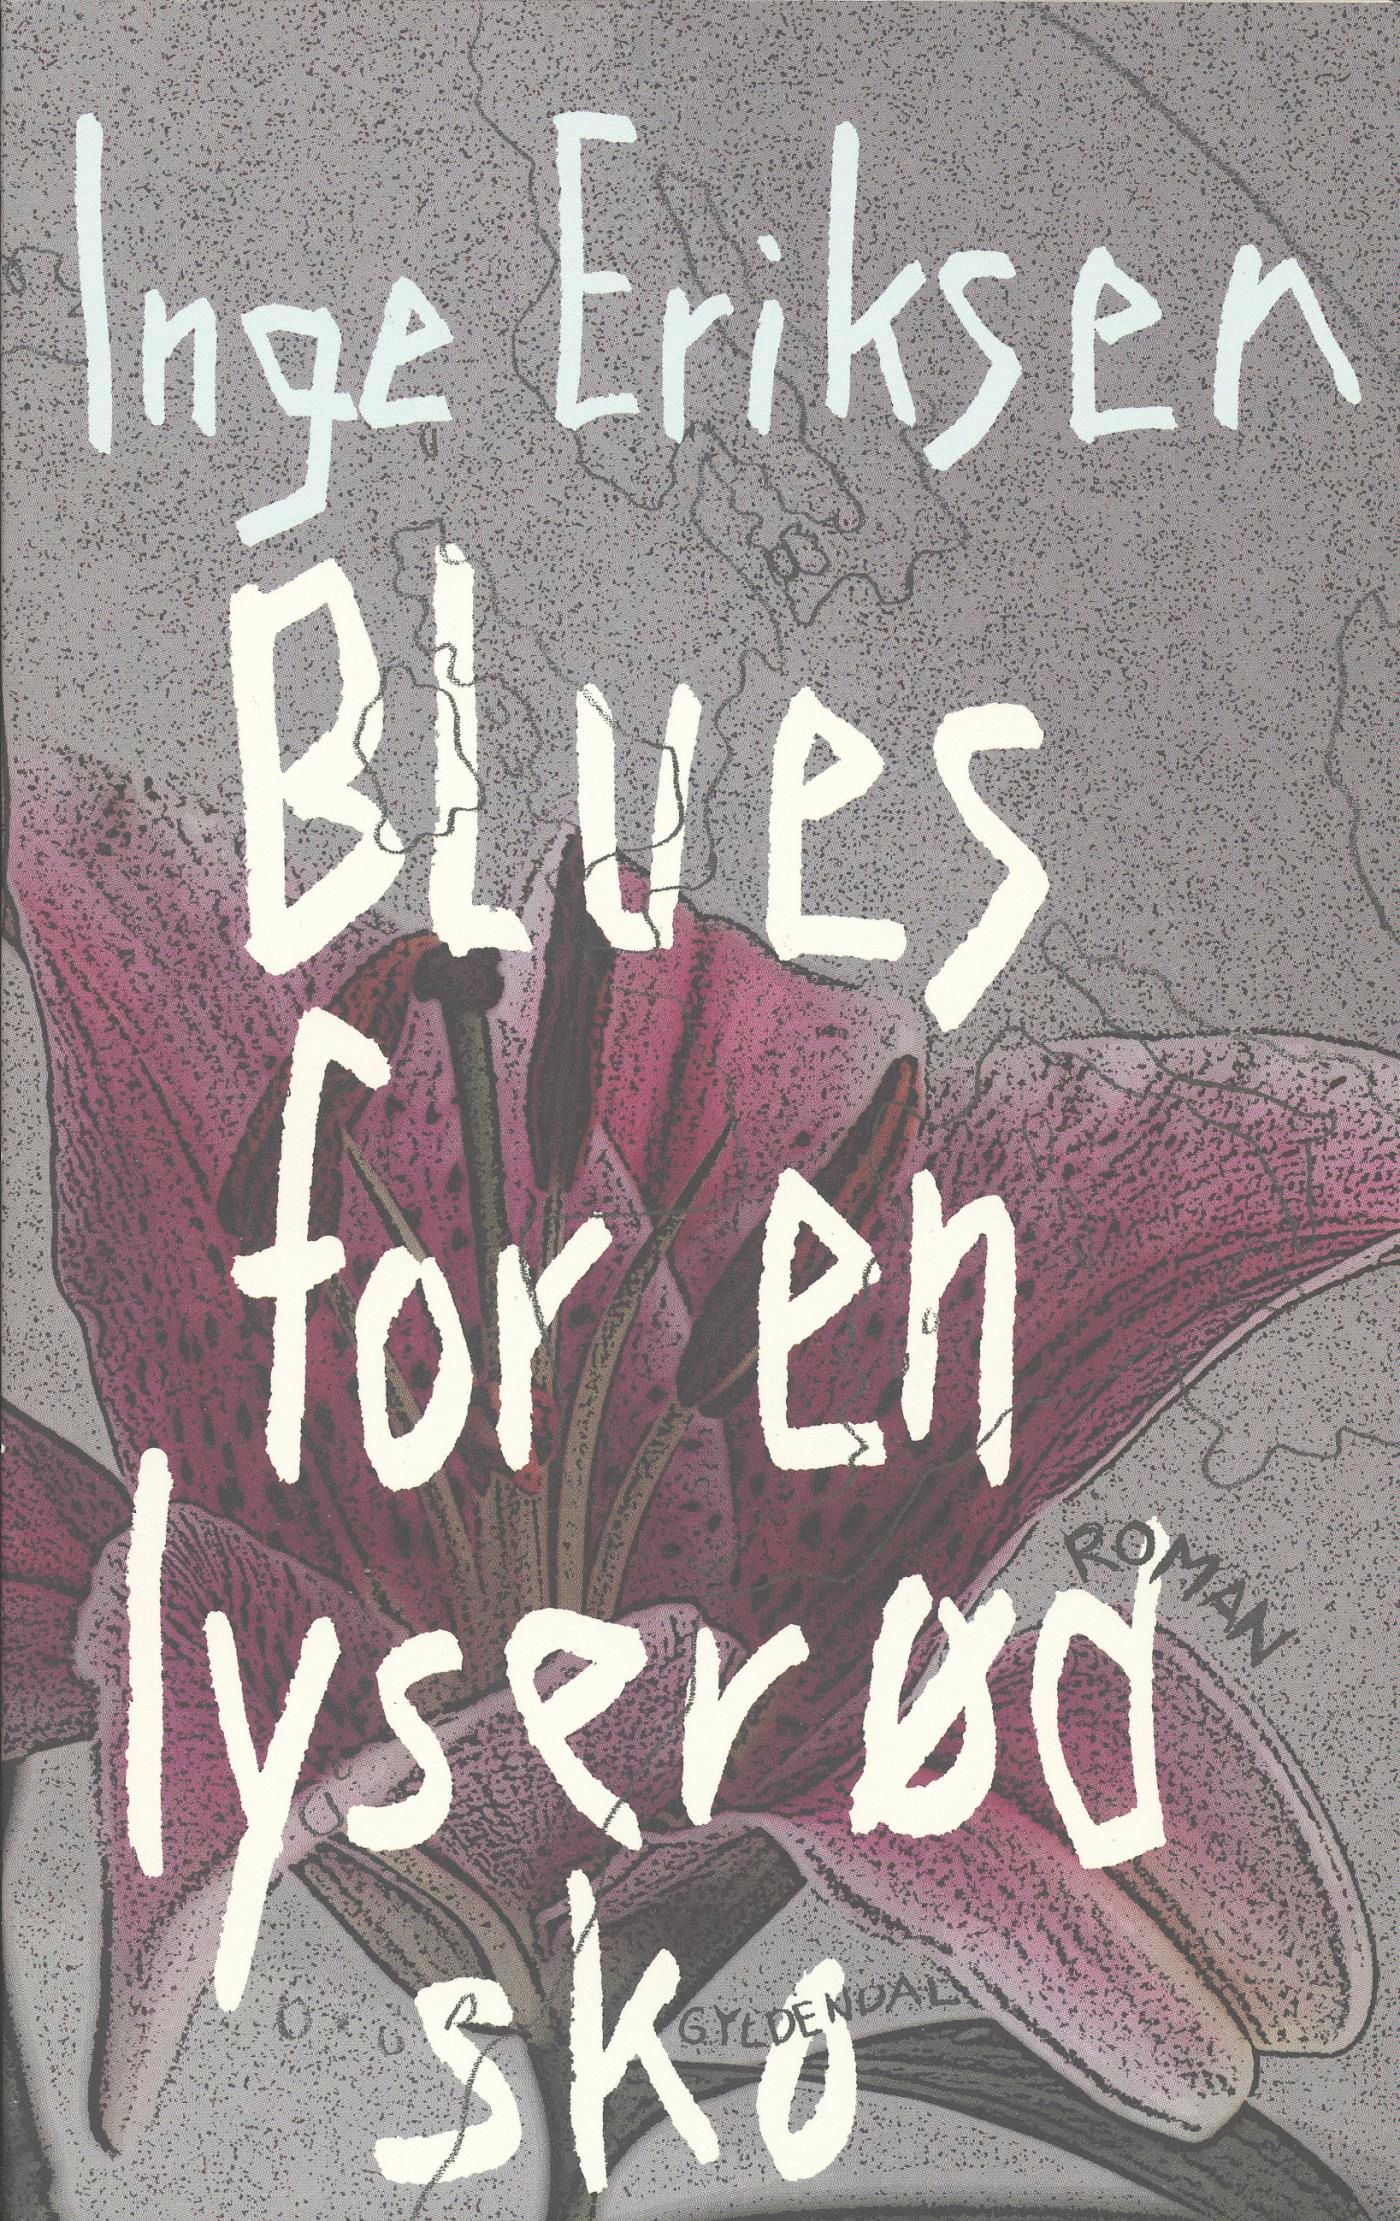 Blues for en lyserød sko, e-bok av Inge Eriksen